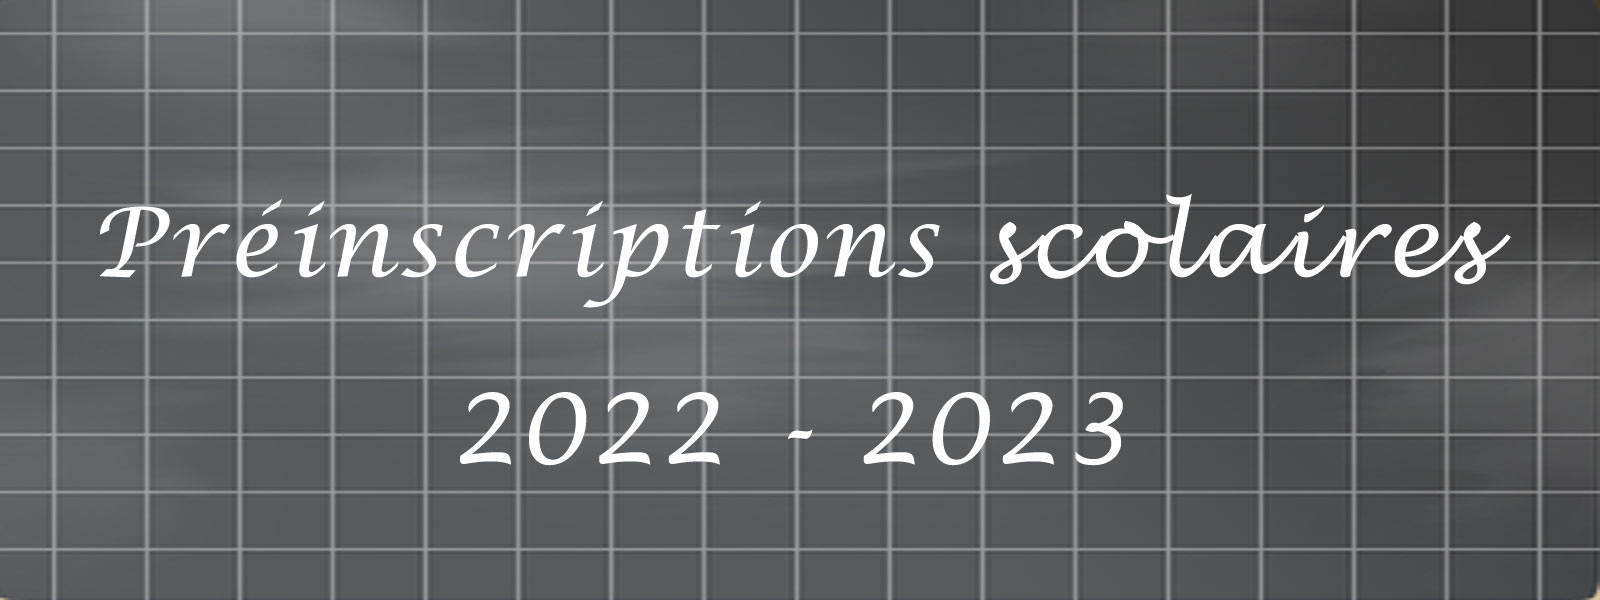 Préinscriptions scolaires 2022-2023